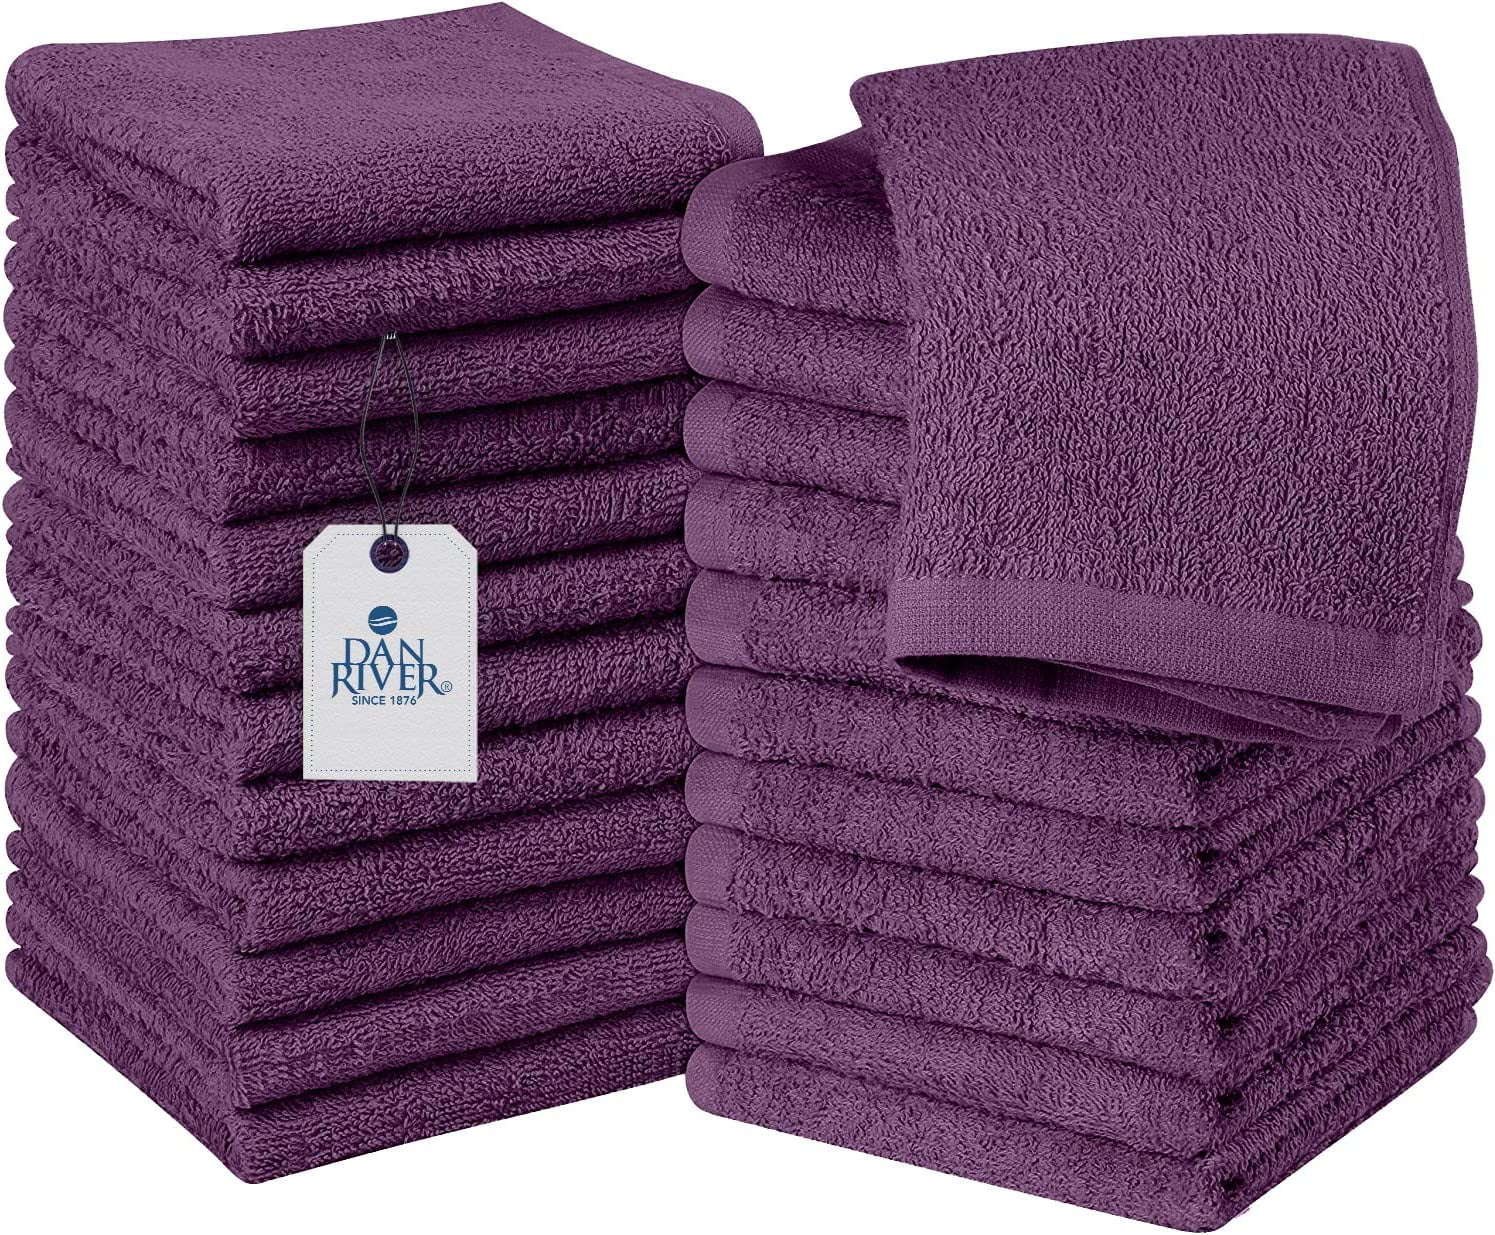 100% Cotton 24 piece Move-In Bundle Towel Set (2 Bath Sheets, 4 Bath Towels,  6 Hand Towels, 8 Wash Cloths, 4 Fin (As Is Item) - Bed Bath & Beyond -  34299550